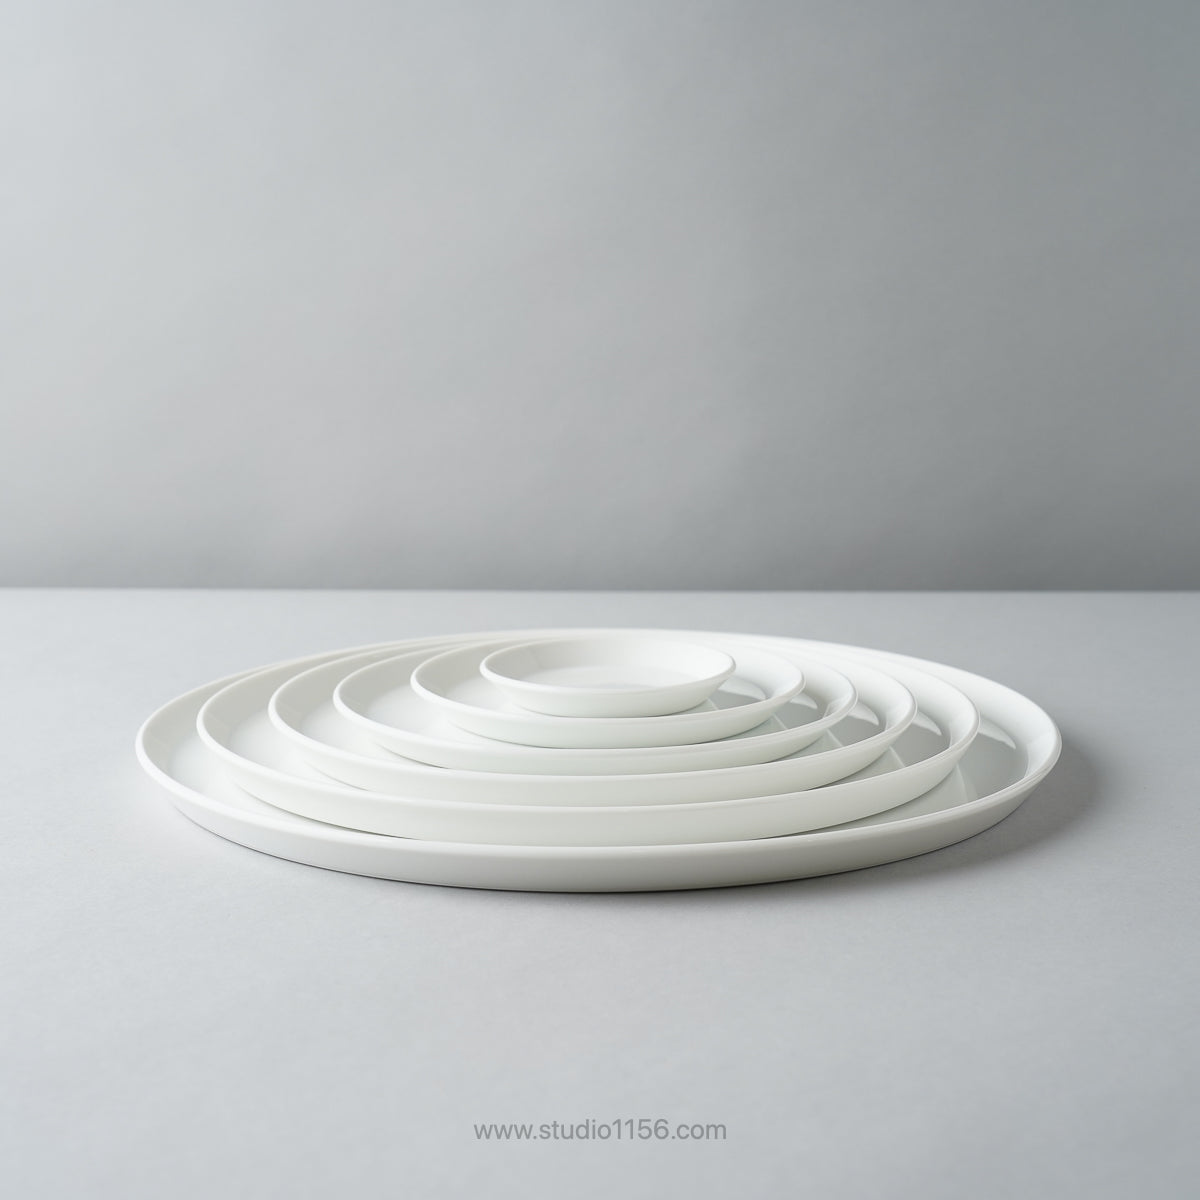 有田焼 ラウンドプレート ホワイト / TY Round Plate Plain White 1616 / Arita Japan Studio1156